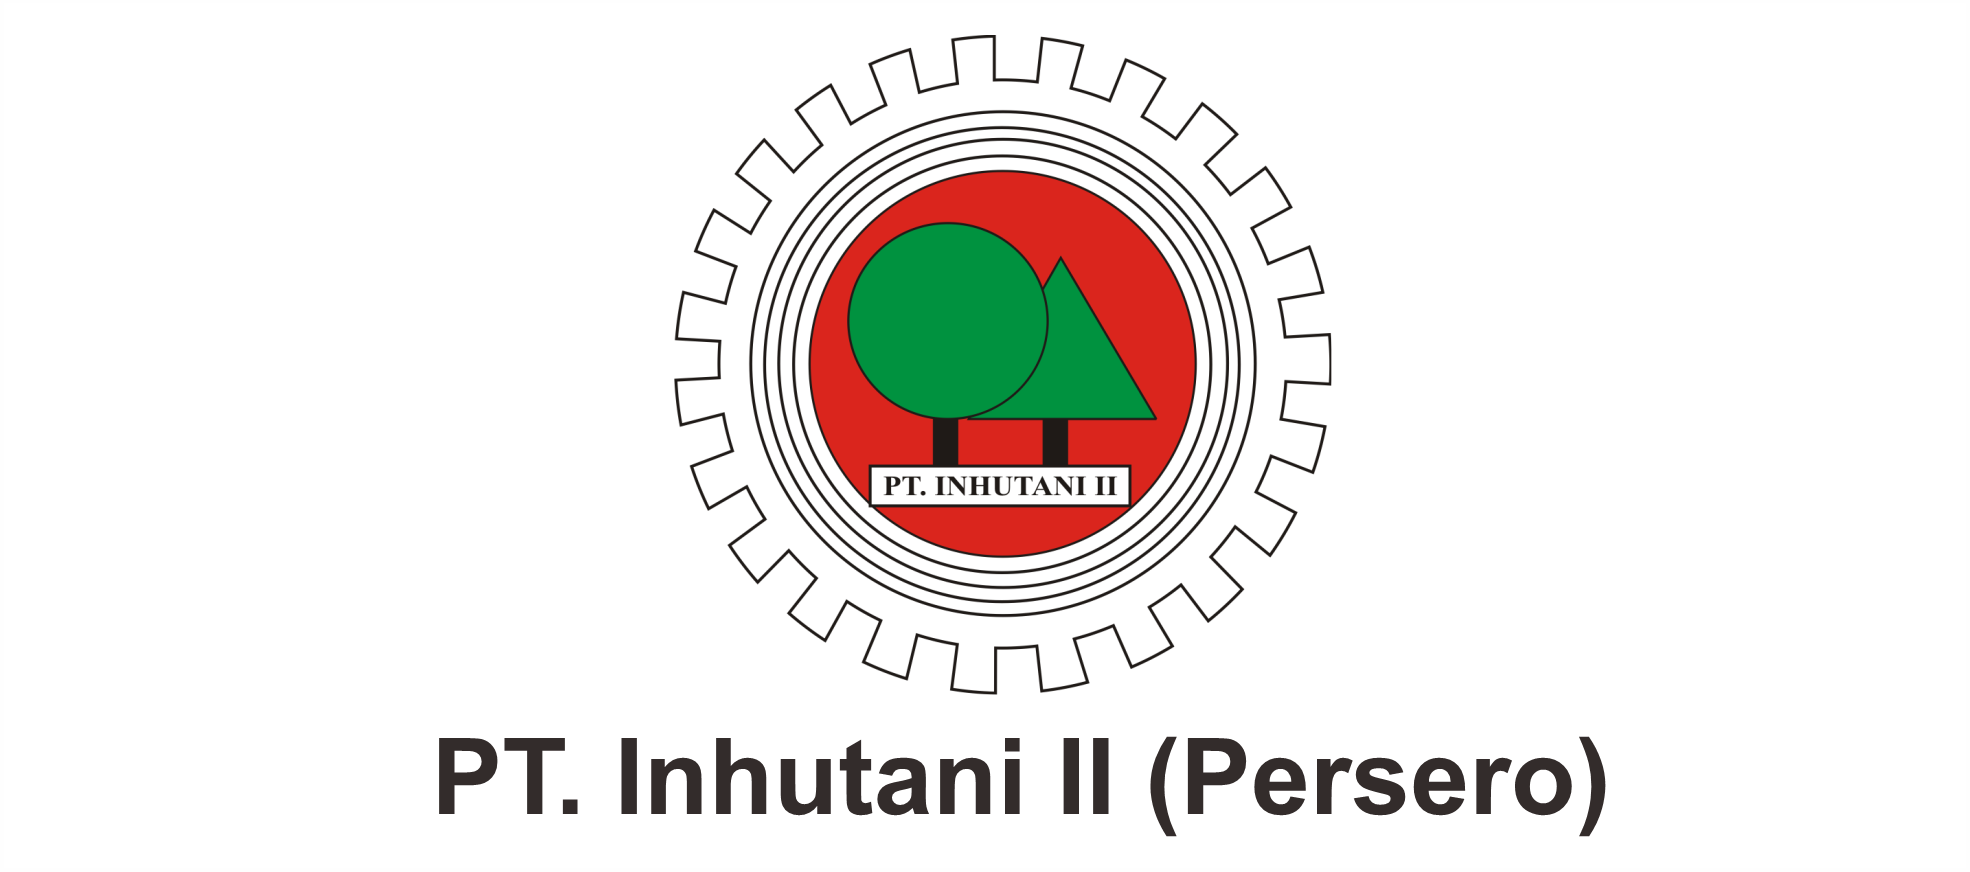 PT. Inhutani II (Persero)